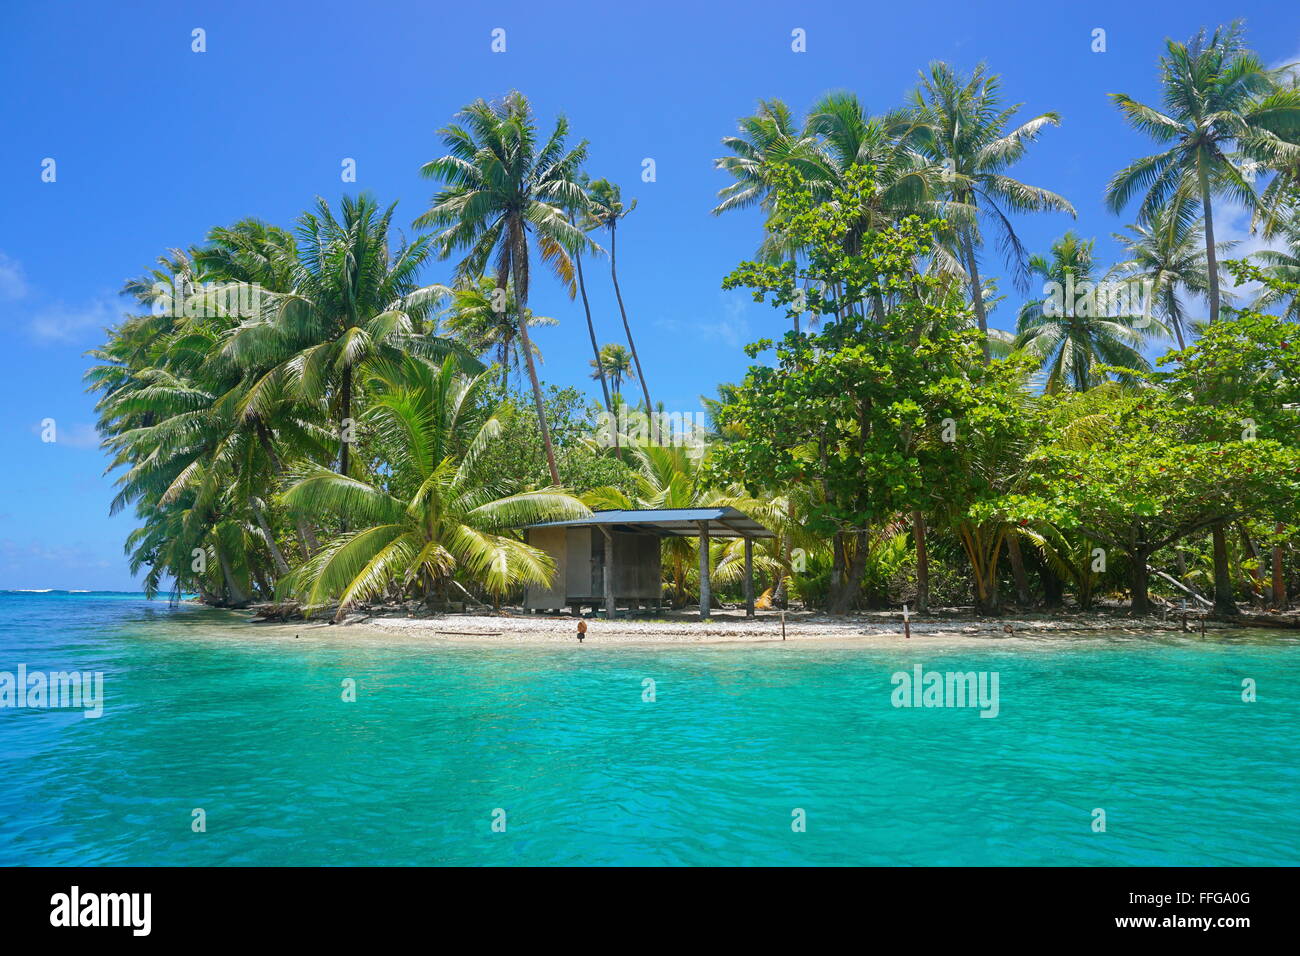 Une petite hutte de végétation tropicale au bord d'un îlot, l'île de Huahine, l'océan Pacifique, Polynésie Française Banque D'Images